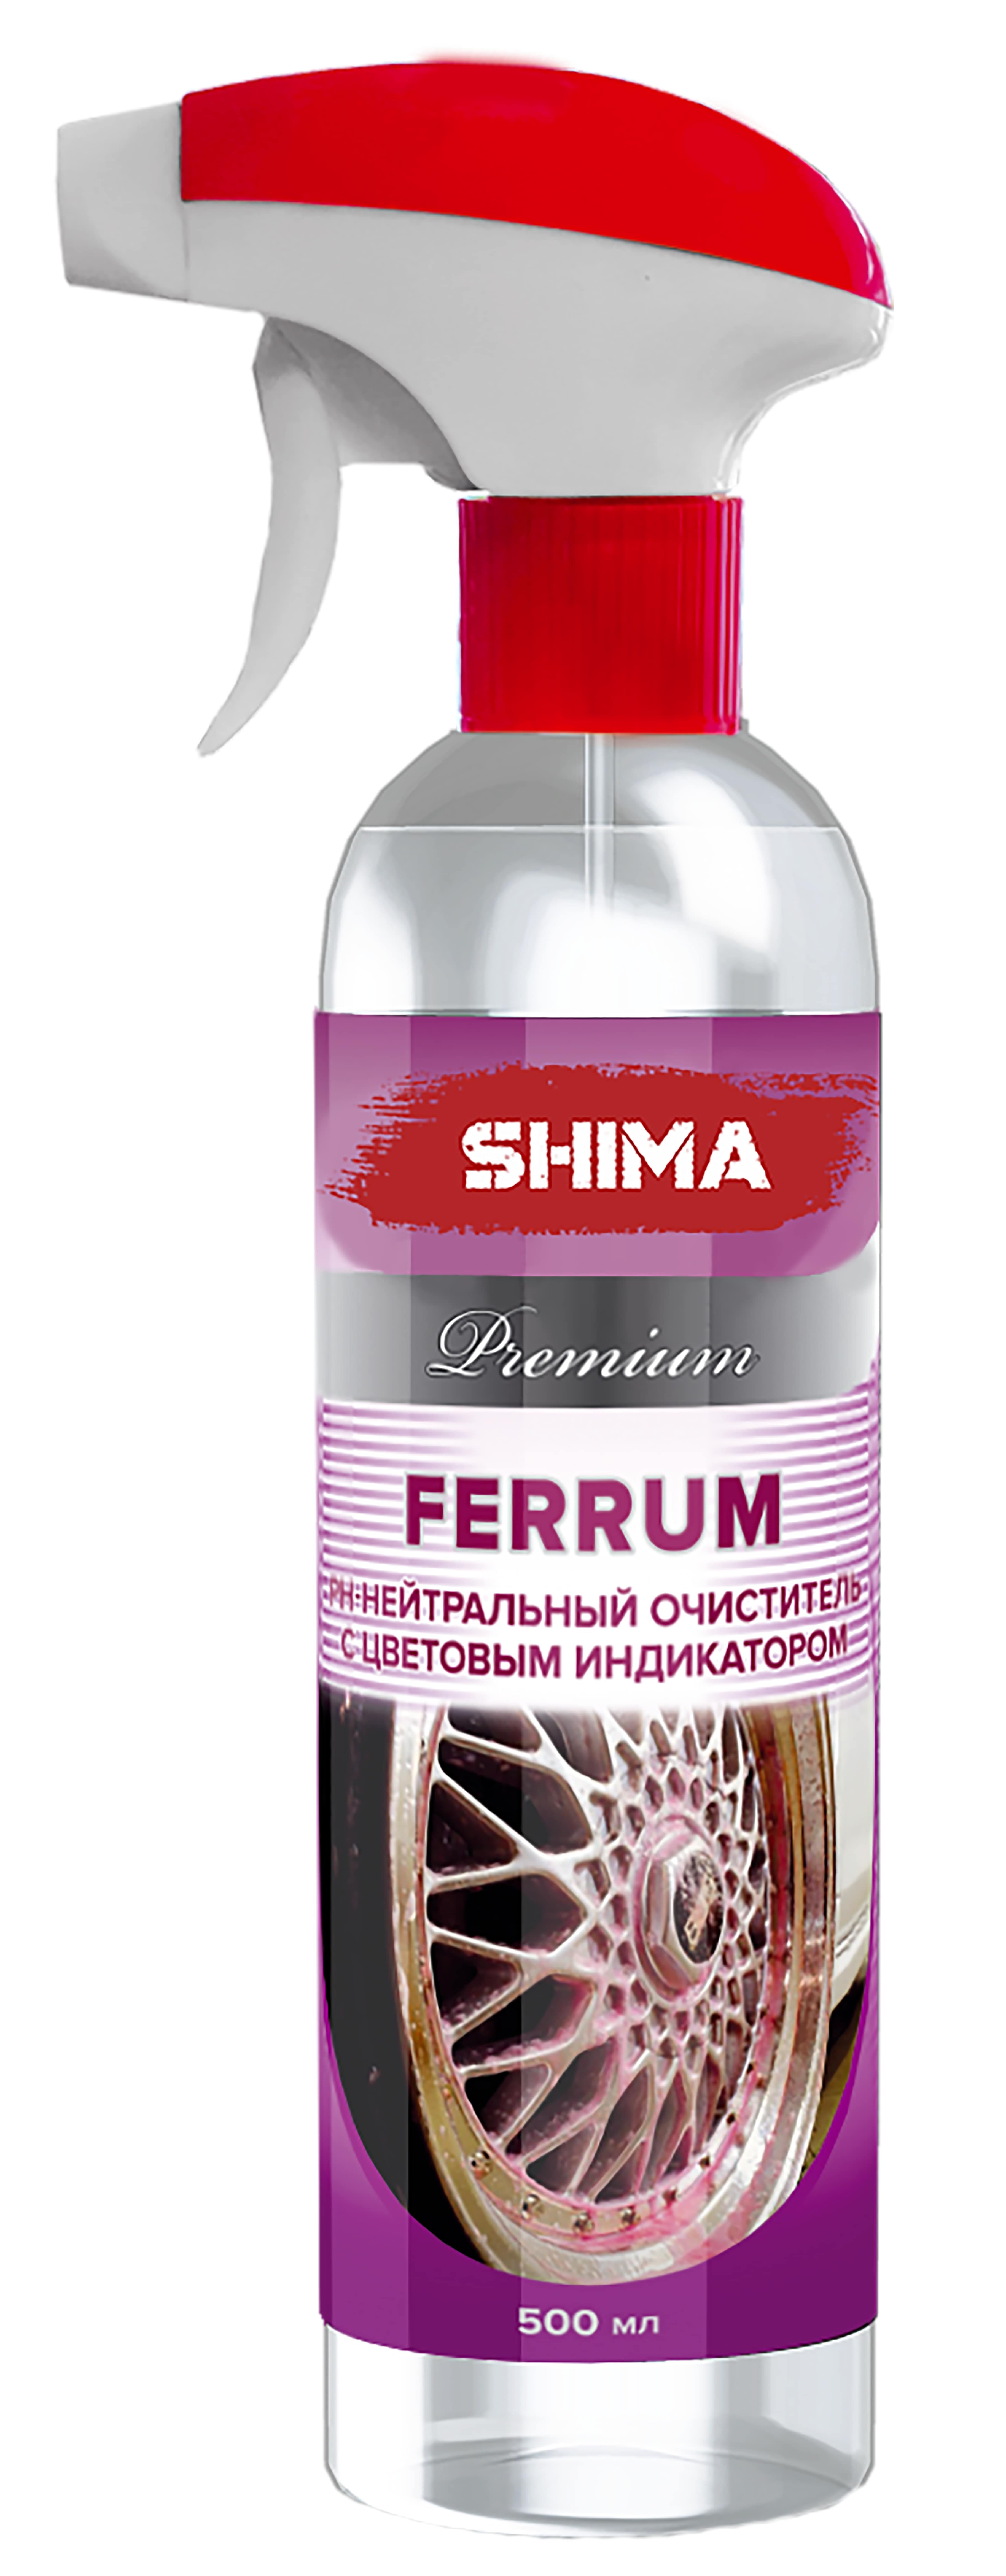 Очиститель дисков автомобиля SHIMA Premium FERRUM РН- нейтральный очиститель с цветовым индикатором 500 мл. Art: 4631111174432